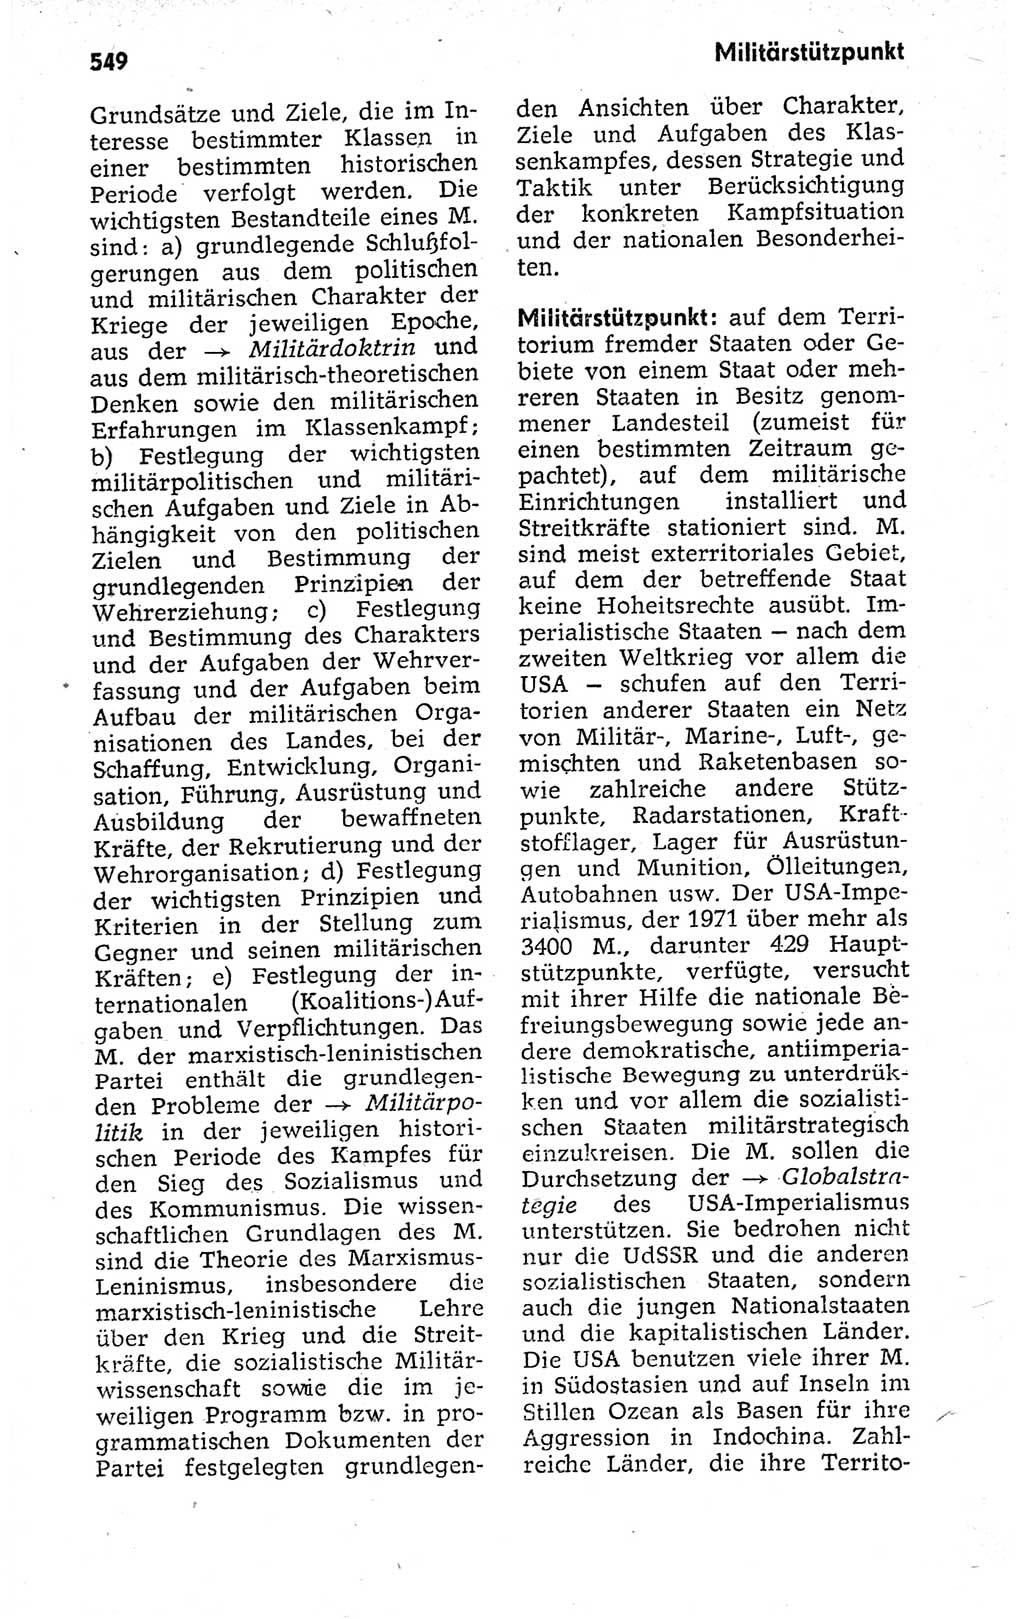 Kleines politisches Wörterbuch [Deutsche Demokratische Republik (DDR)] 1973, Seite 549 (Kl. pol. Wb. DDR 1973, S. 549)